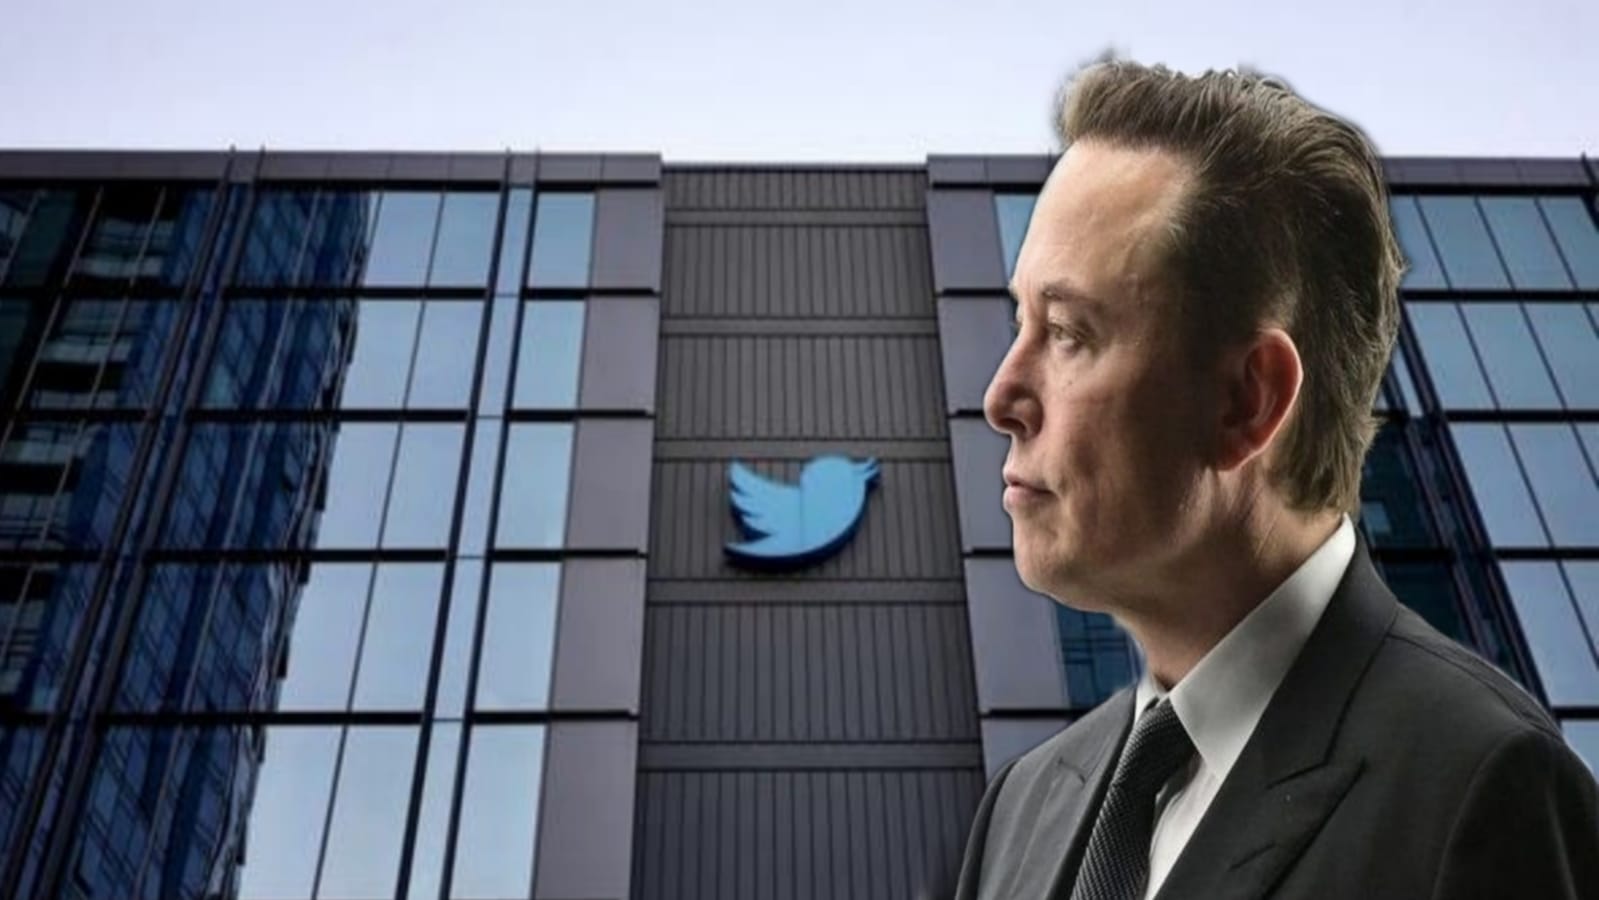 إدارة "تويتر" تعلن عن استكمال صفقة استحواذ ماسك على الشركة